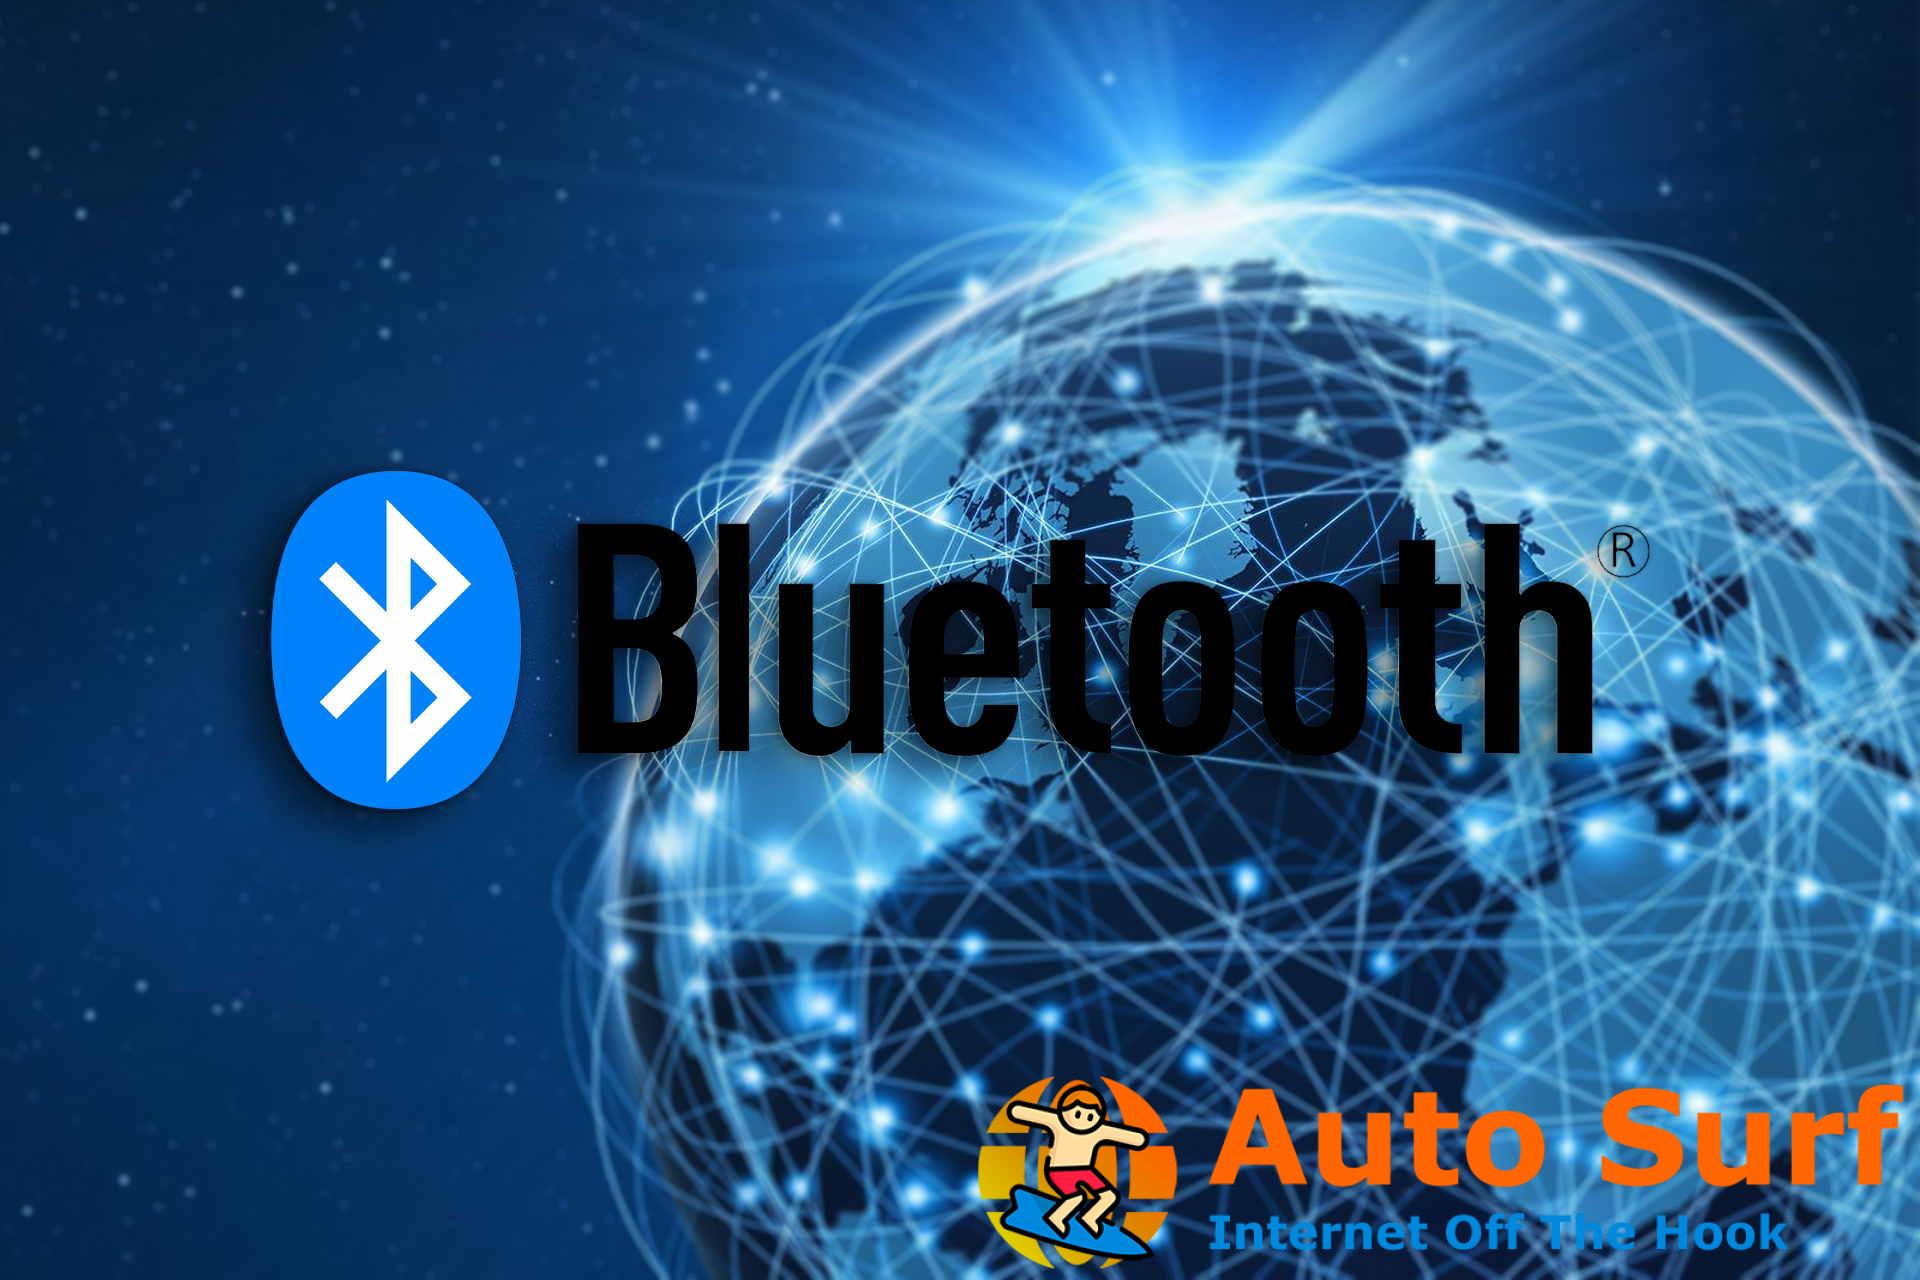 Bluetooth no enciende el problema